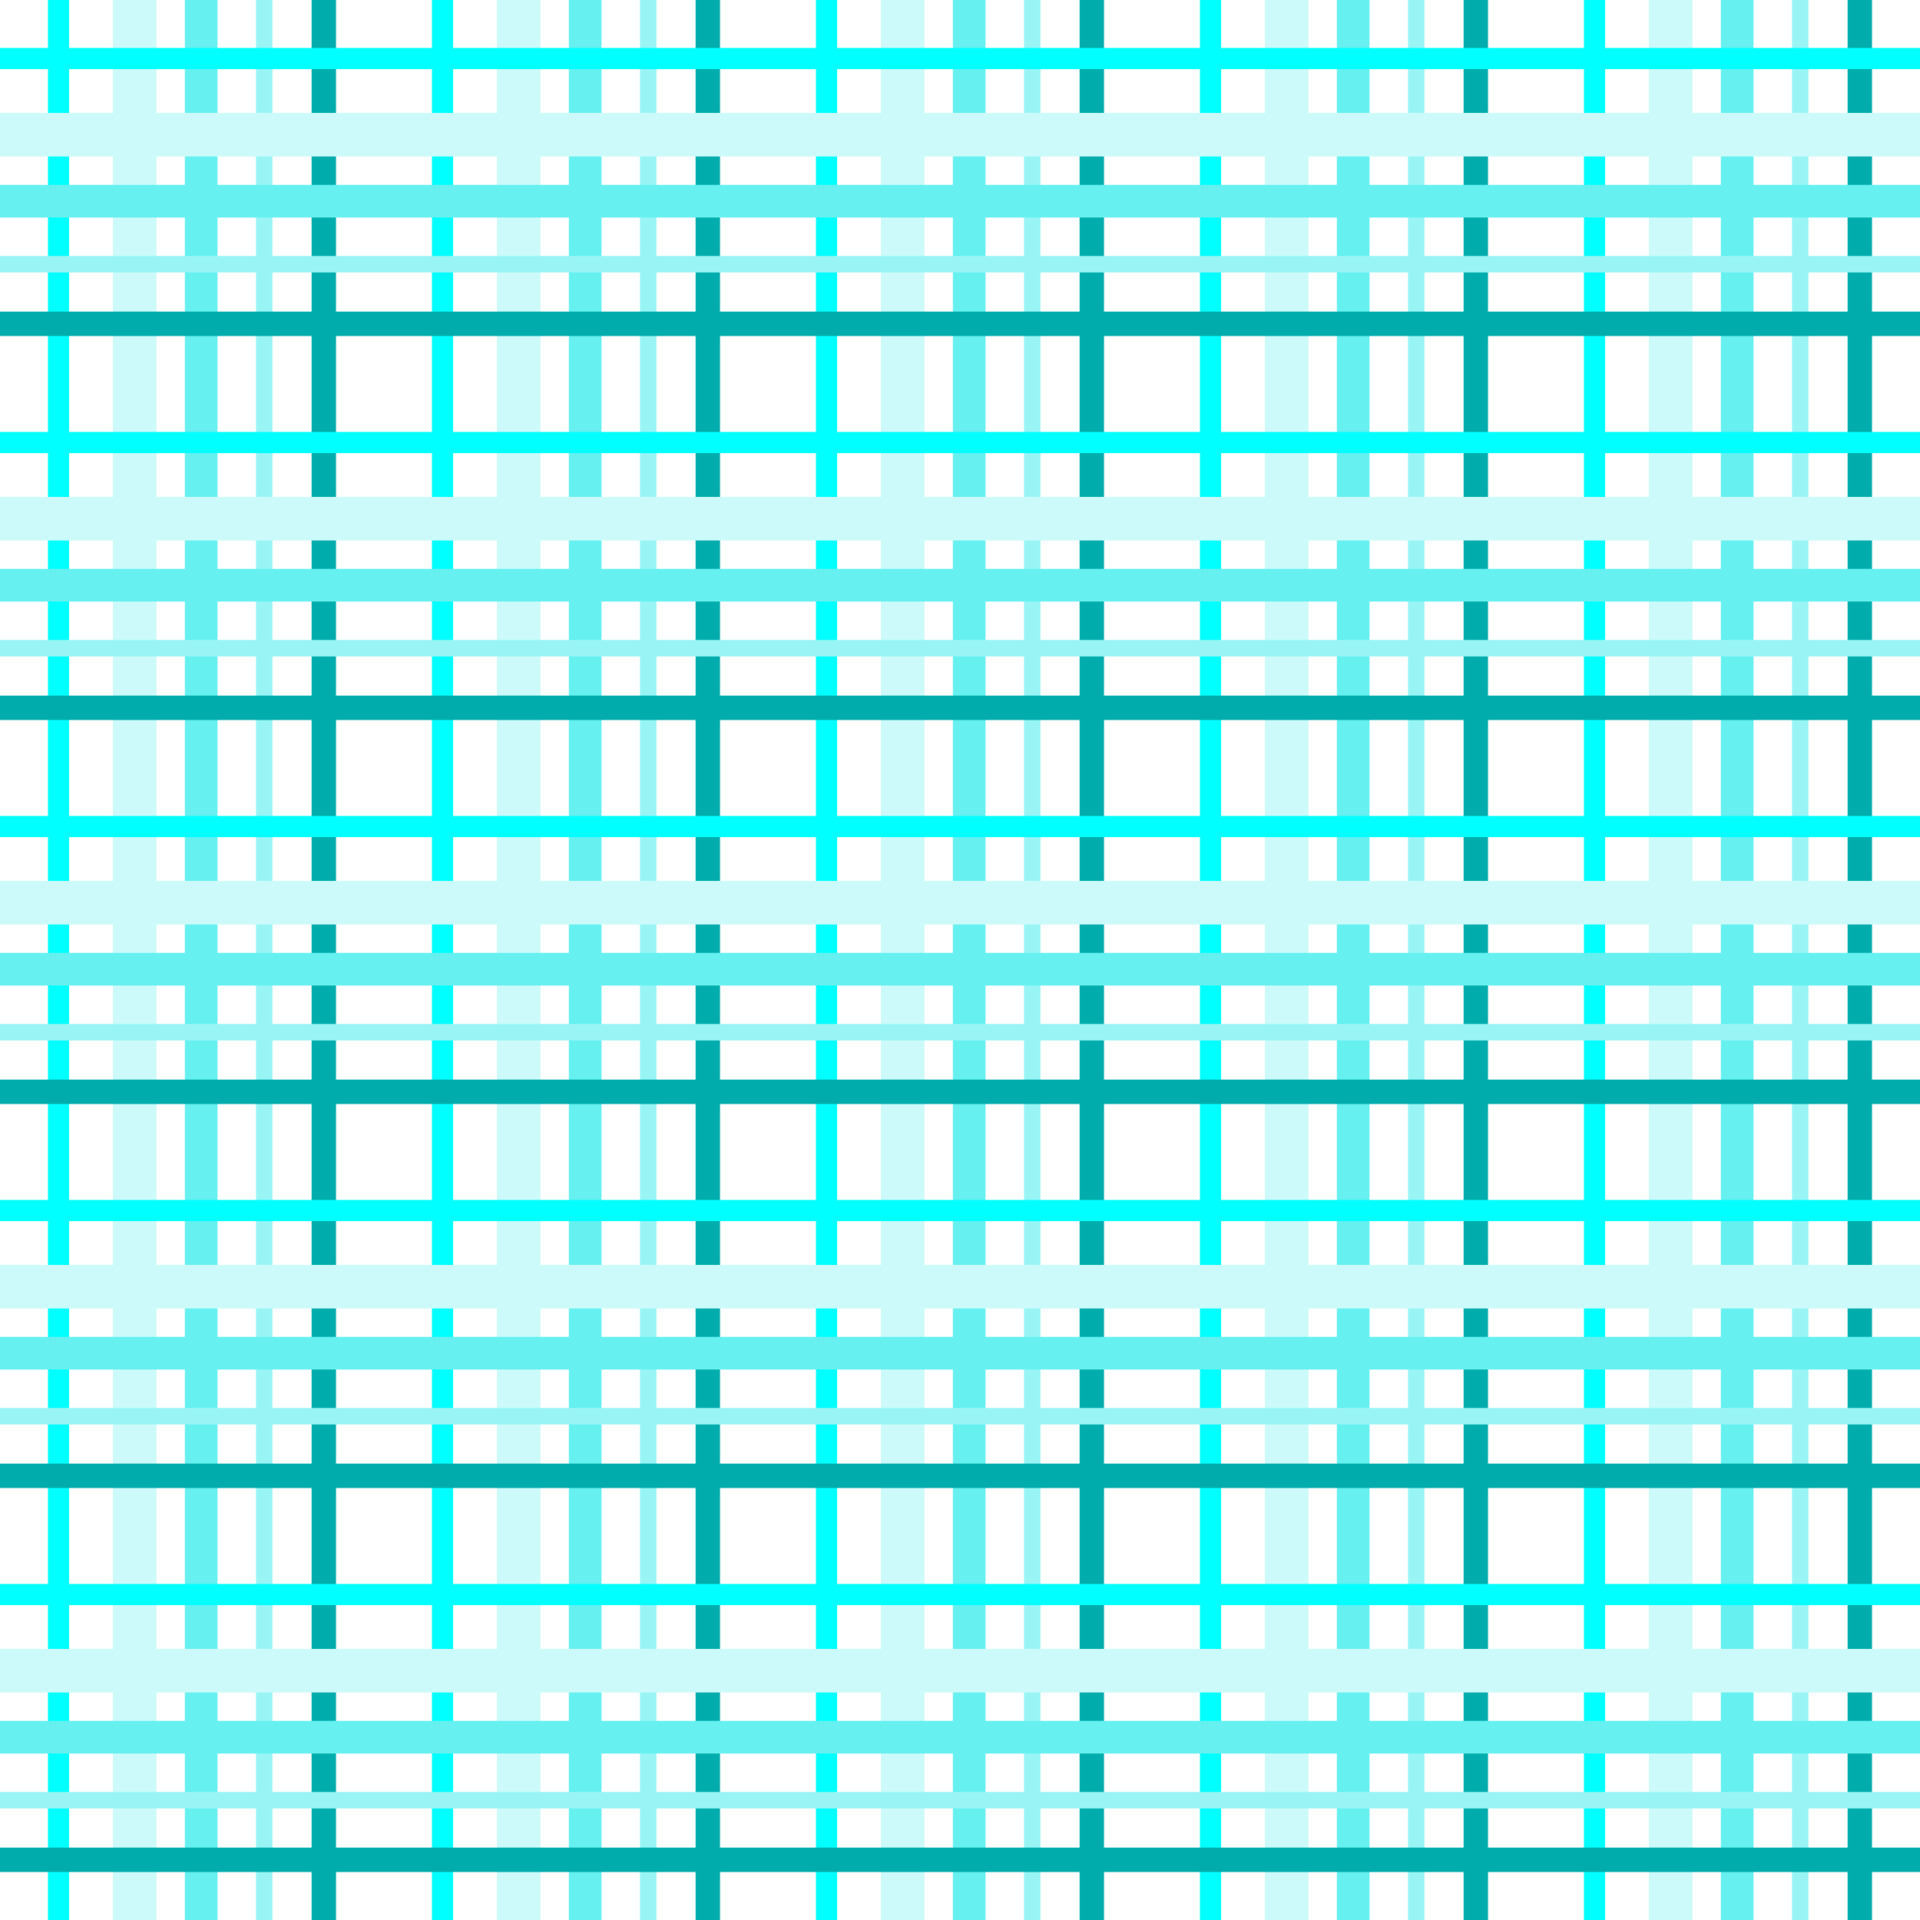 Imagem gratuita: textura de tecido xadrez, design de linhas, azul